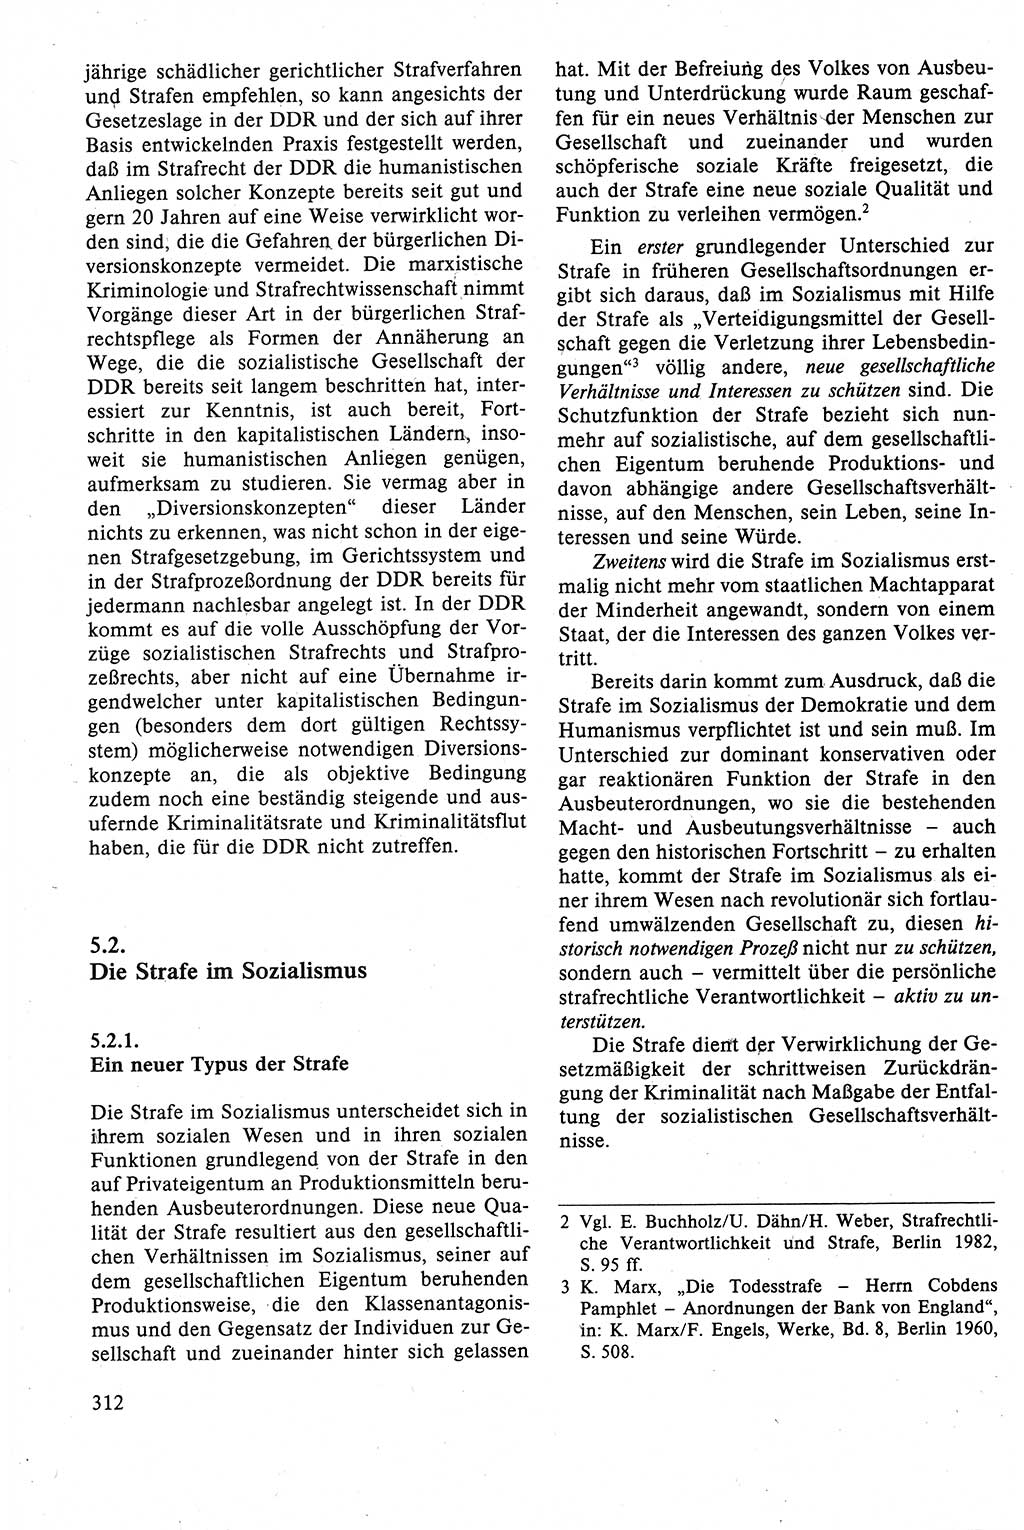 Strafrecht der DDR (Deutsche Demokratische Republik), Lehrbuch 1988, Seite 312 (Strafr. DDR Lb. 1988, S. 312)